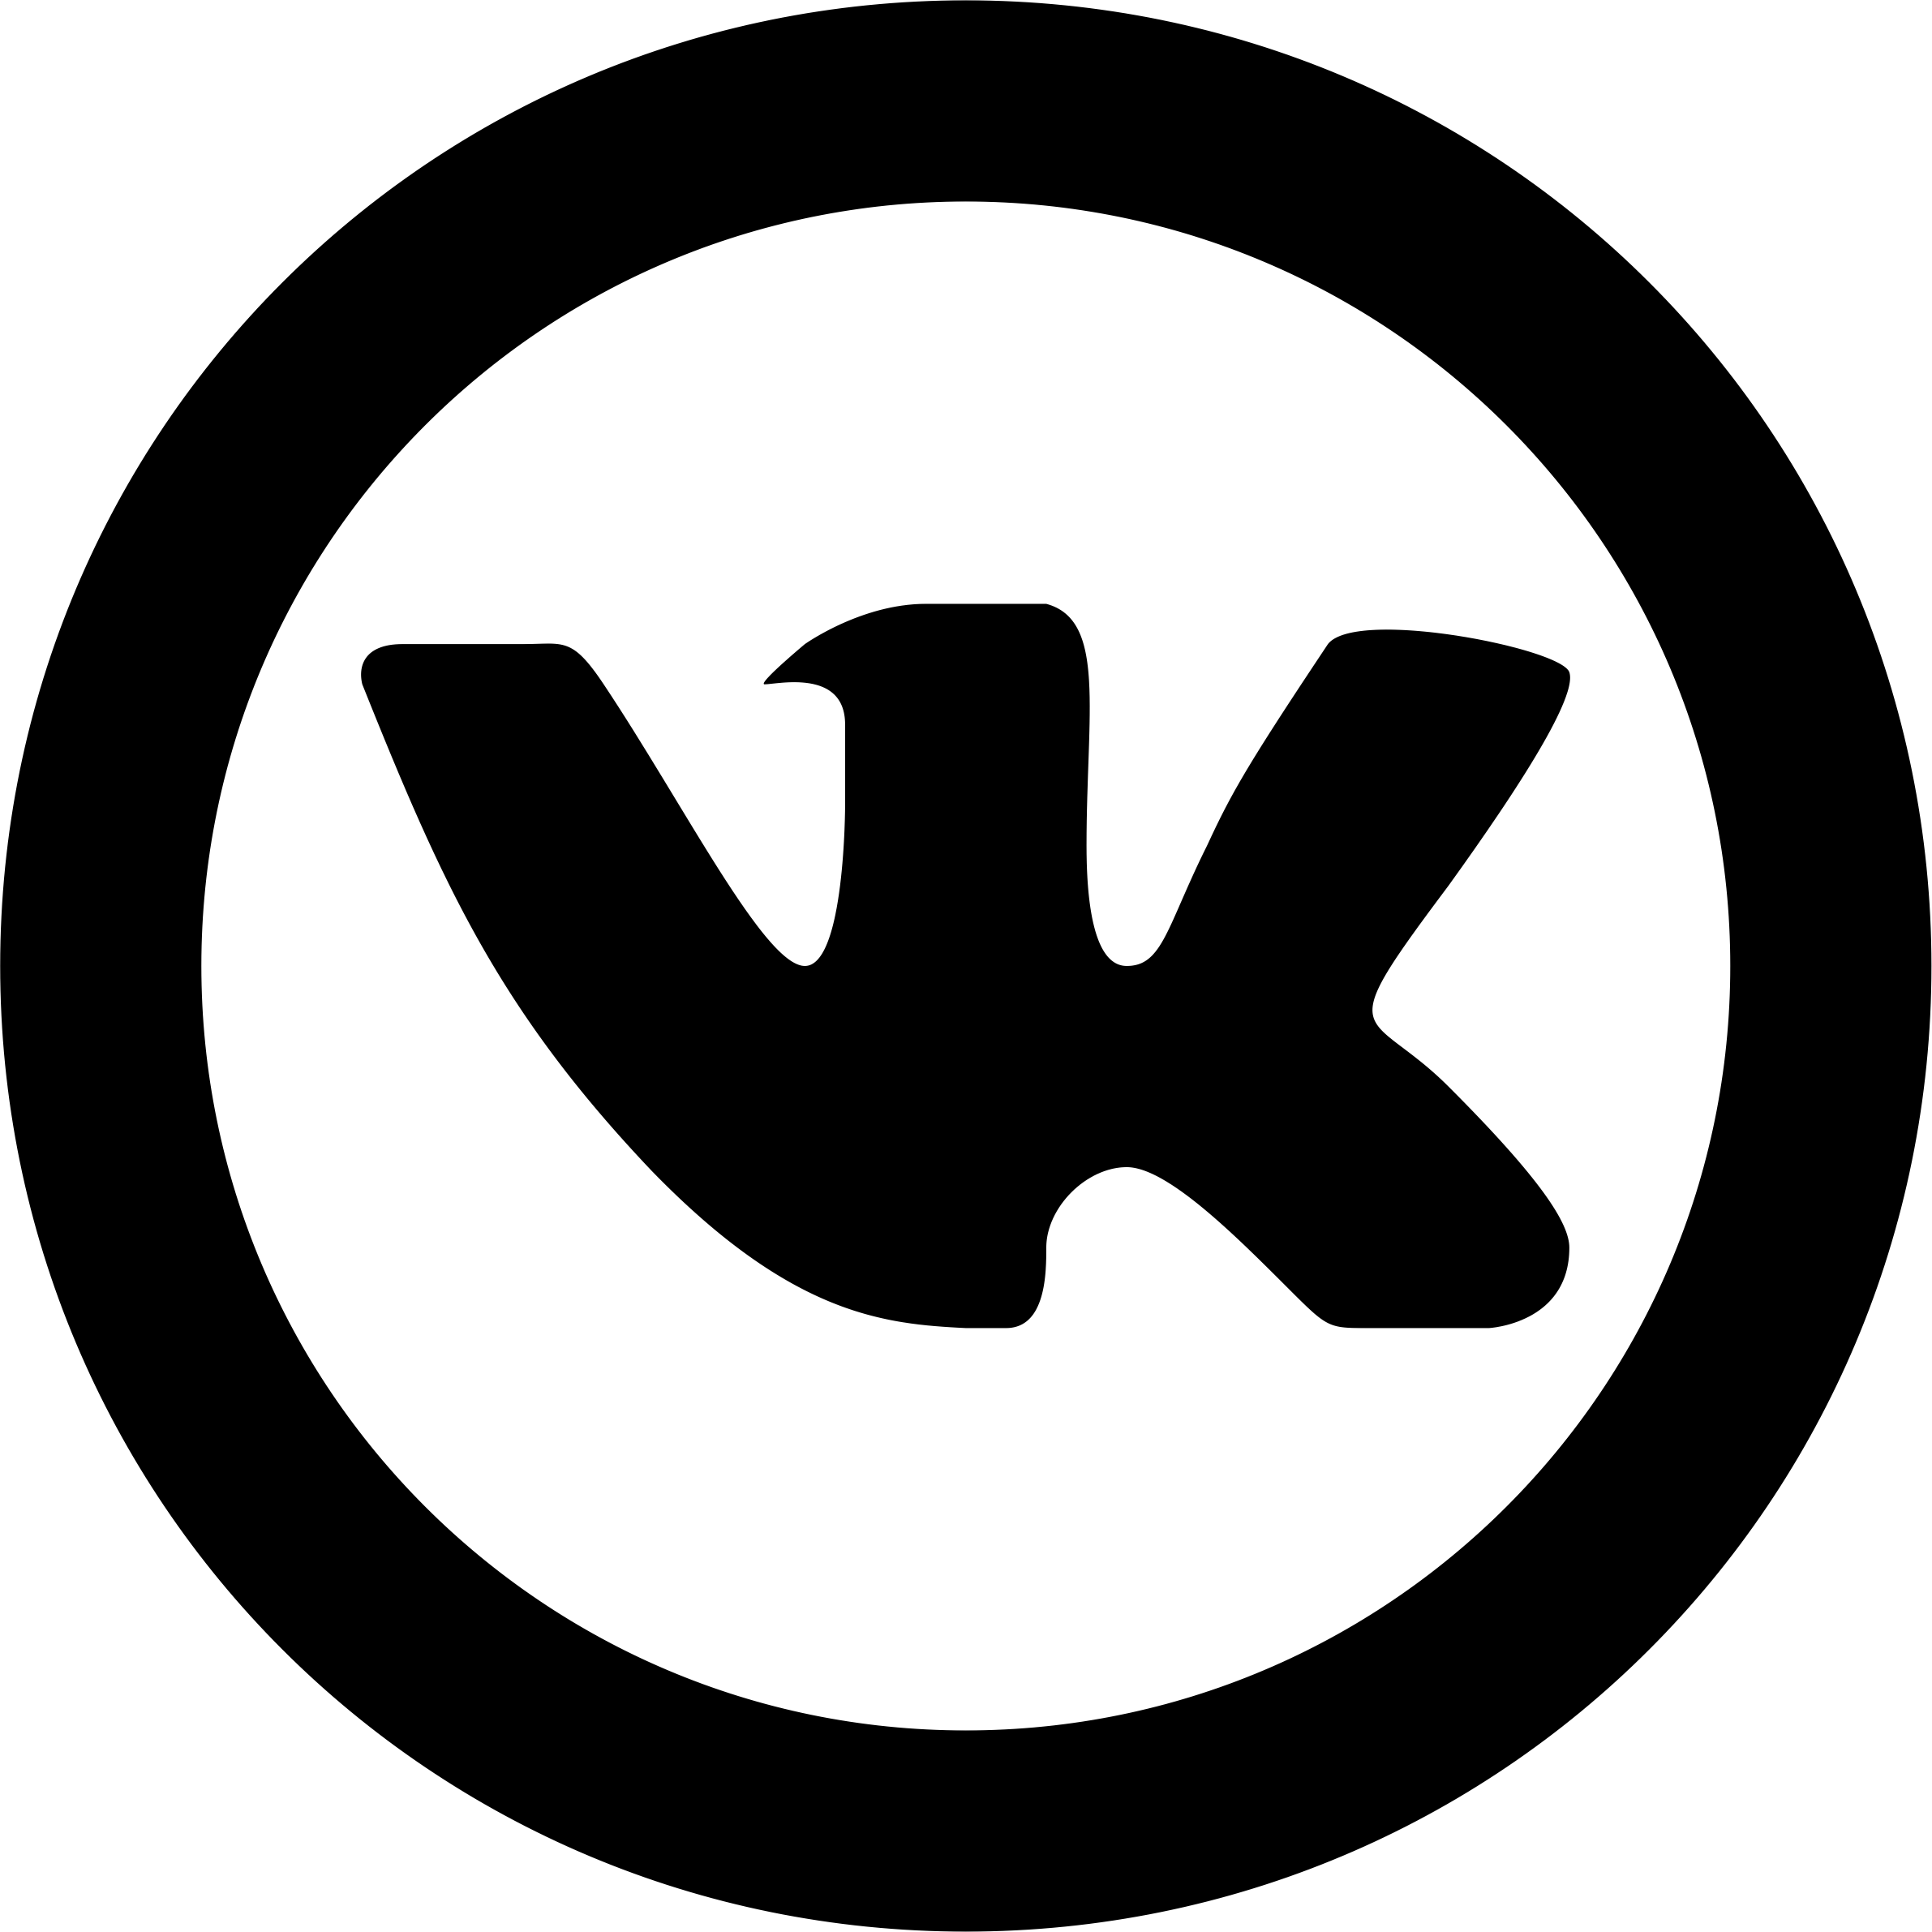 Логотип вк черный. Логотип ВК. Значок ВК вектор. Иконка ВК черная. Логотип ВК круглый.